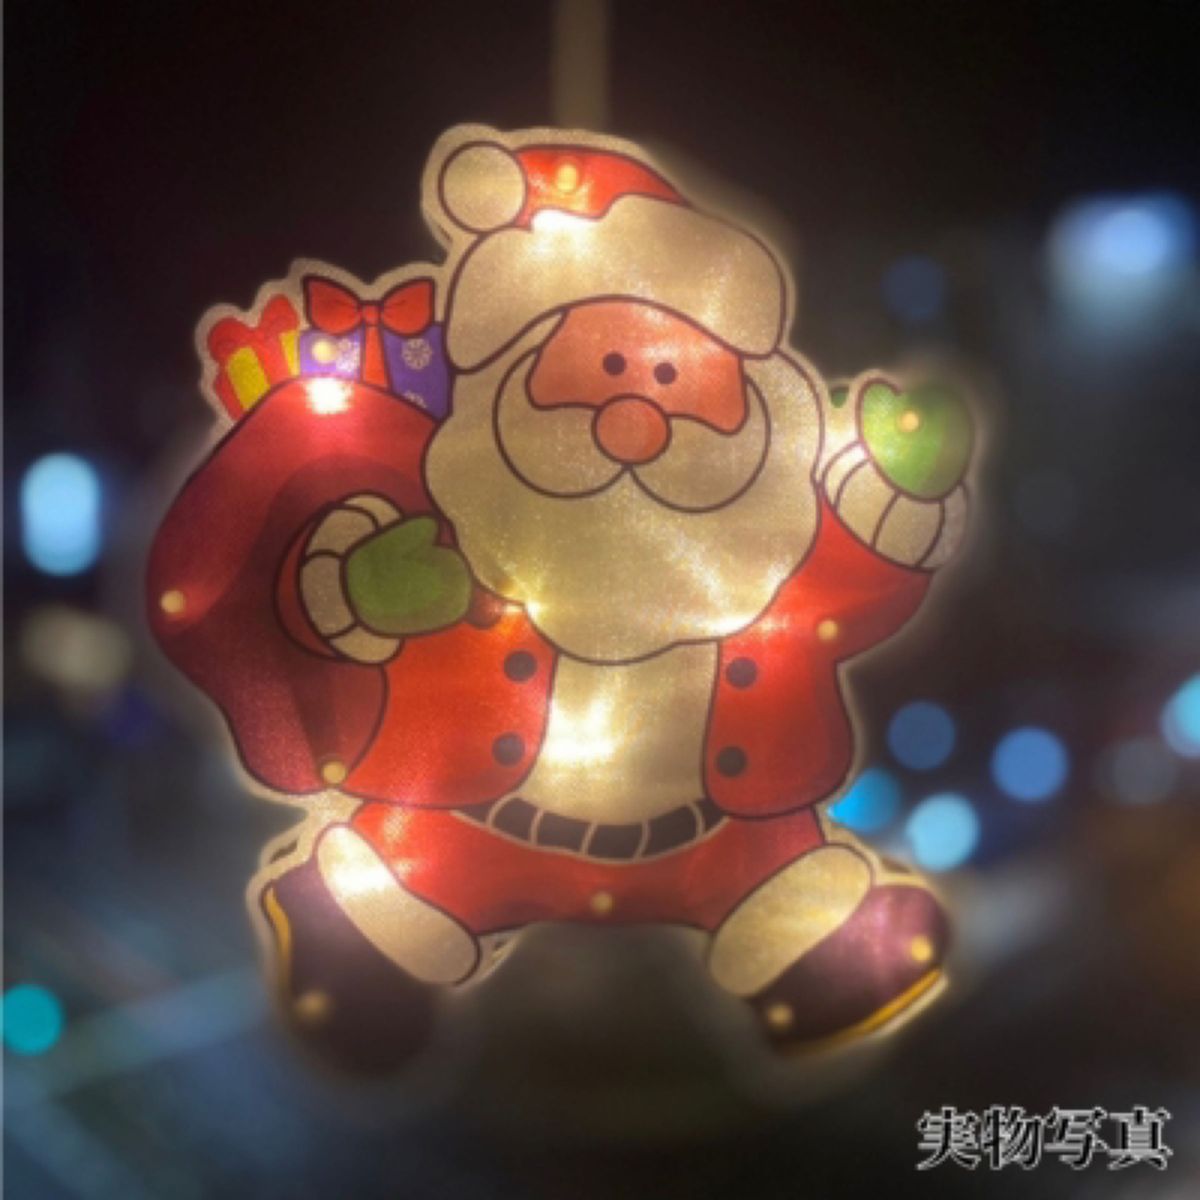 クリスマス LEDライト サンタクロース イルミネーション 電飾 LED 電池式 サンタ 飾り キラキラ カーテンライト ガーデン